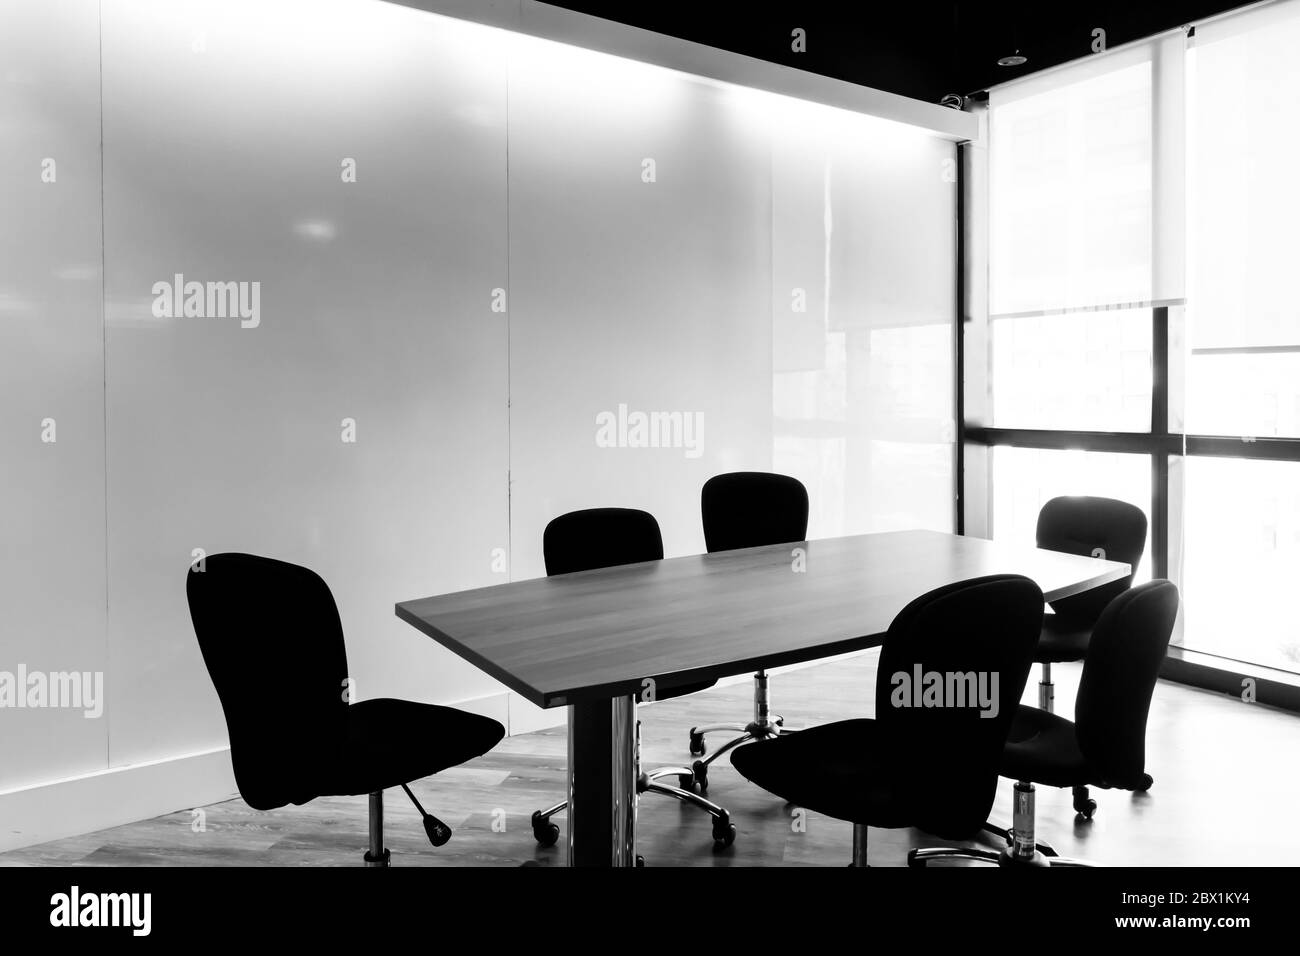 Table et chaises dans une salle de conférence. Tons noir et blanc. Banque D'Images